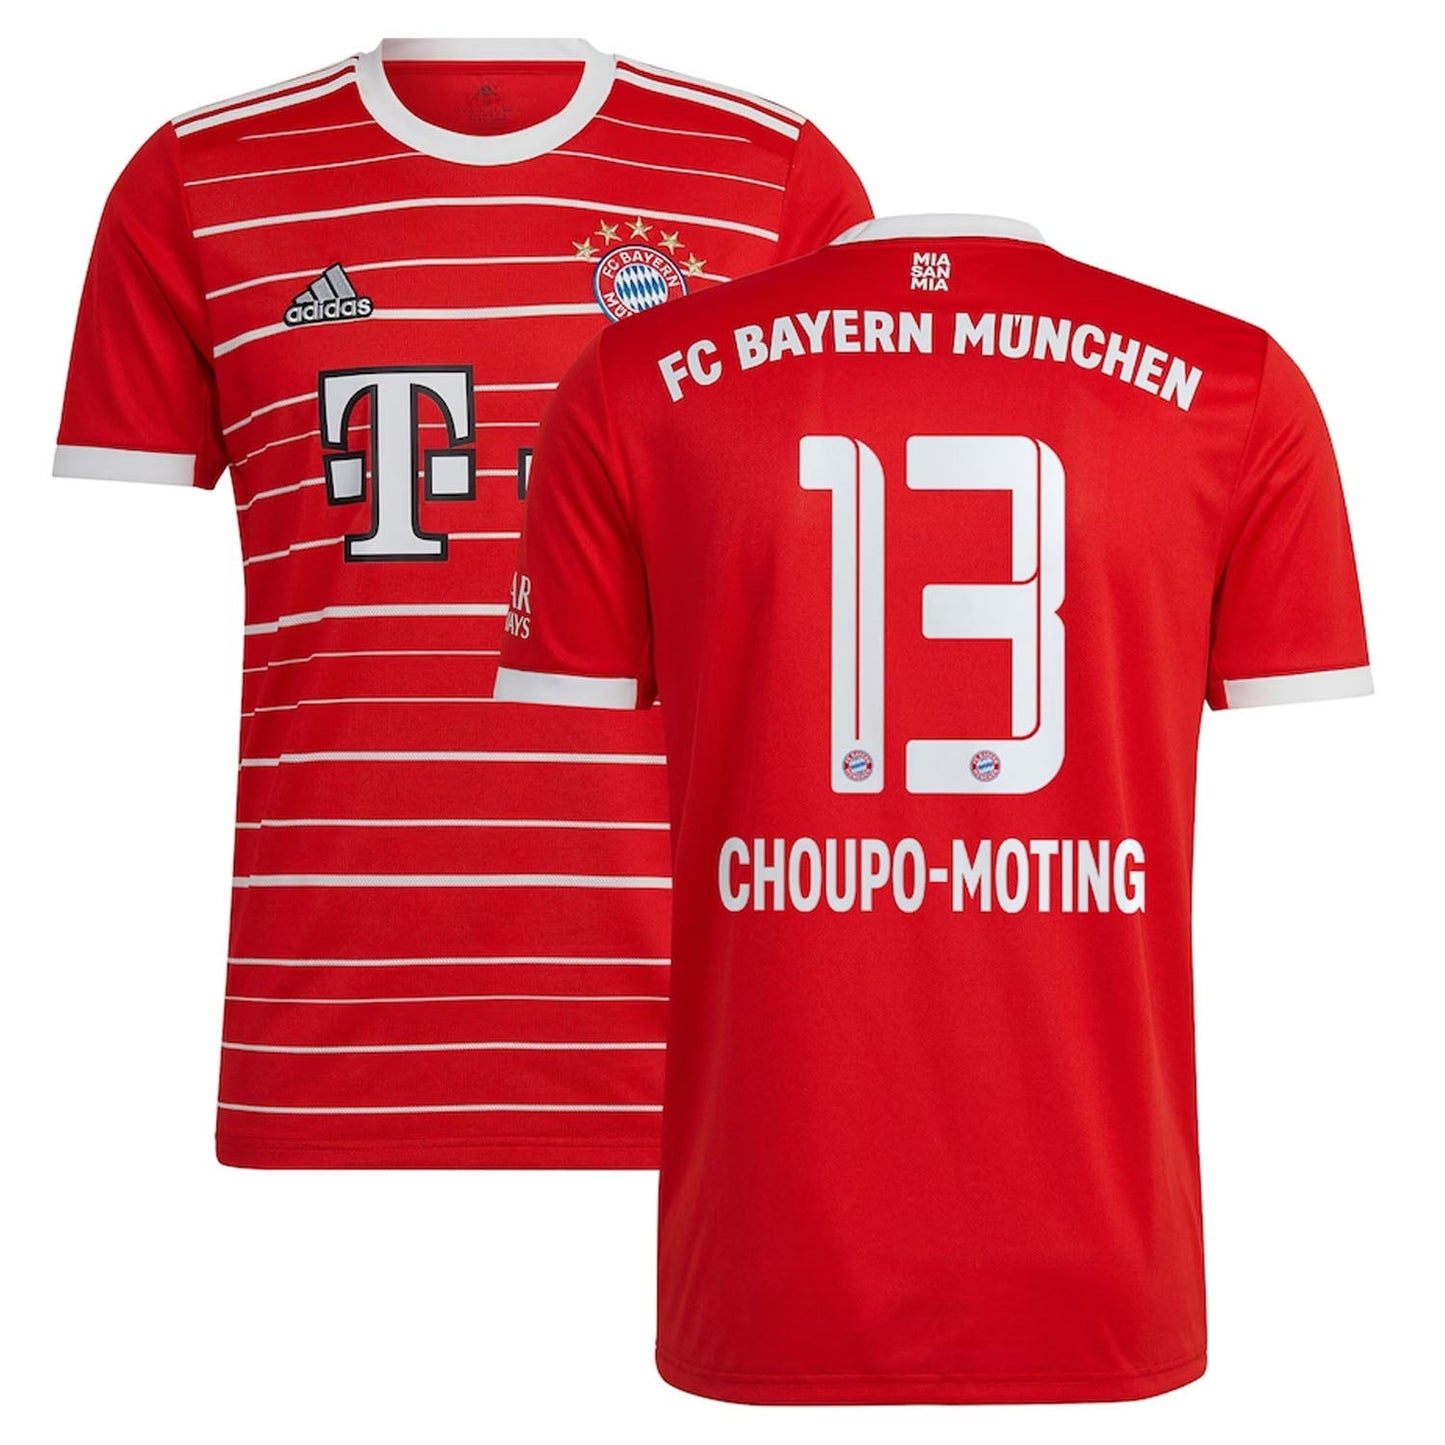 Choupo Moting Bayren Munich 13 Jersey